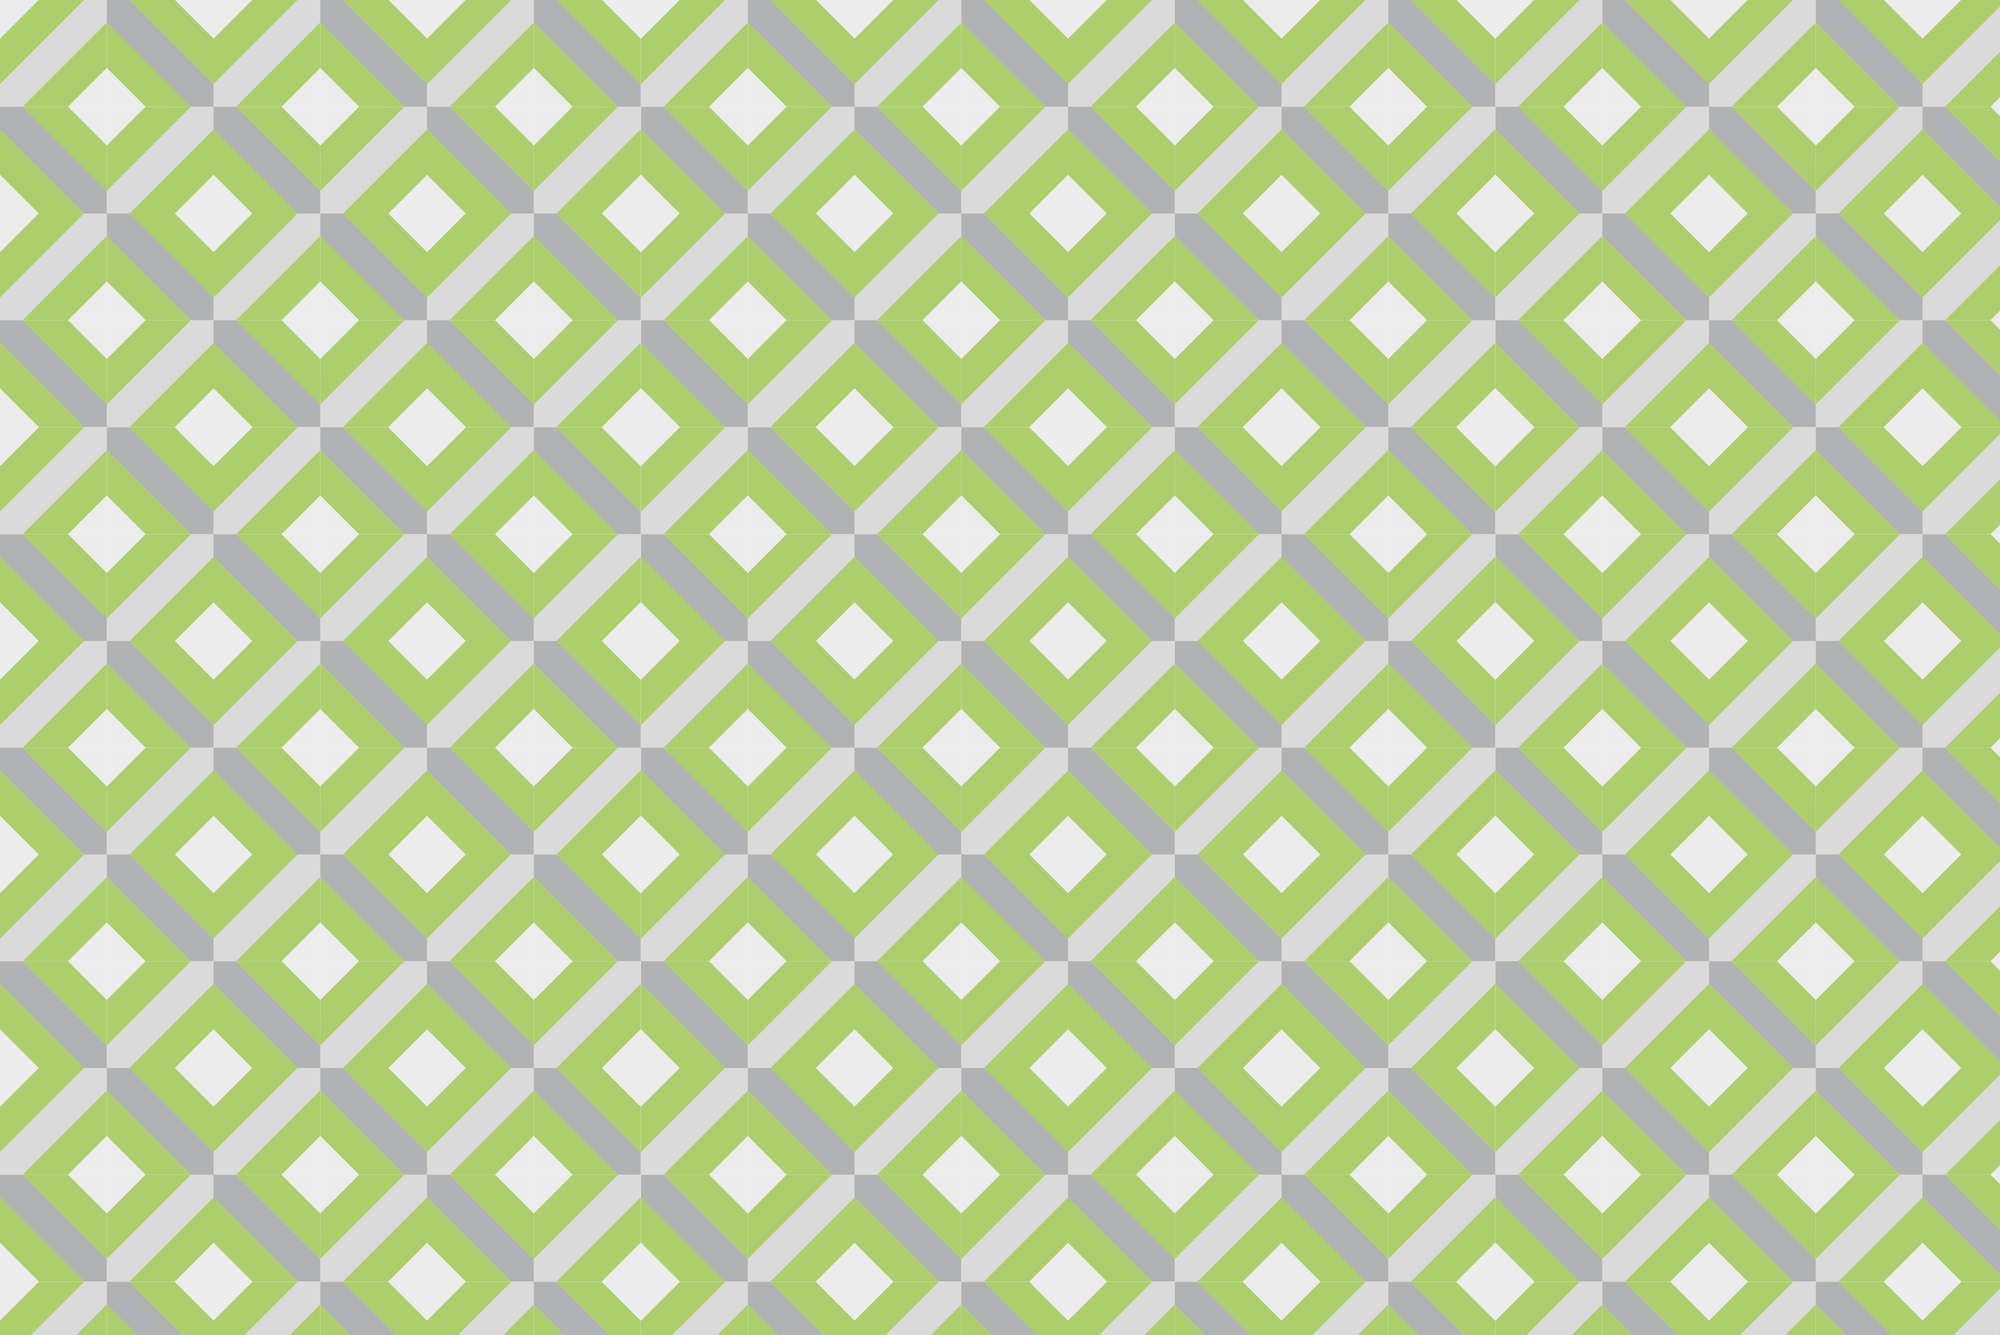             Papier peint design motif "boîte" avec petits carrés verts sur intissé structuré
        